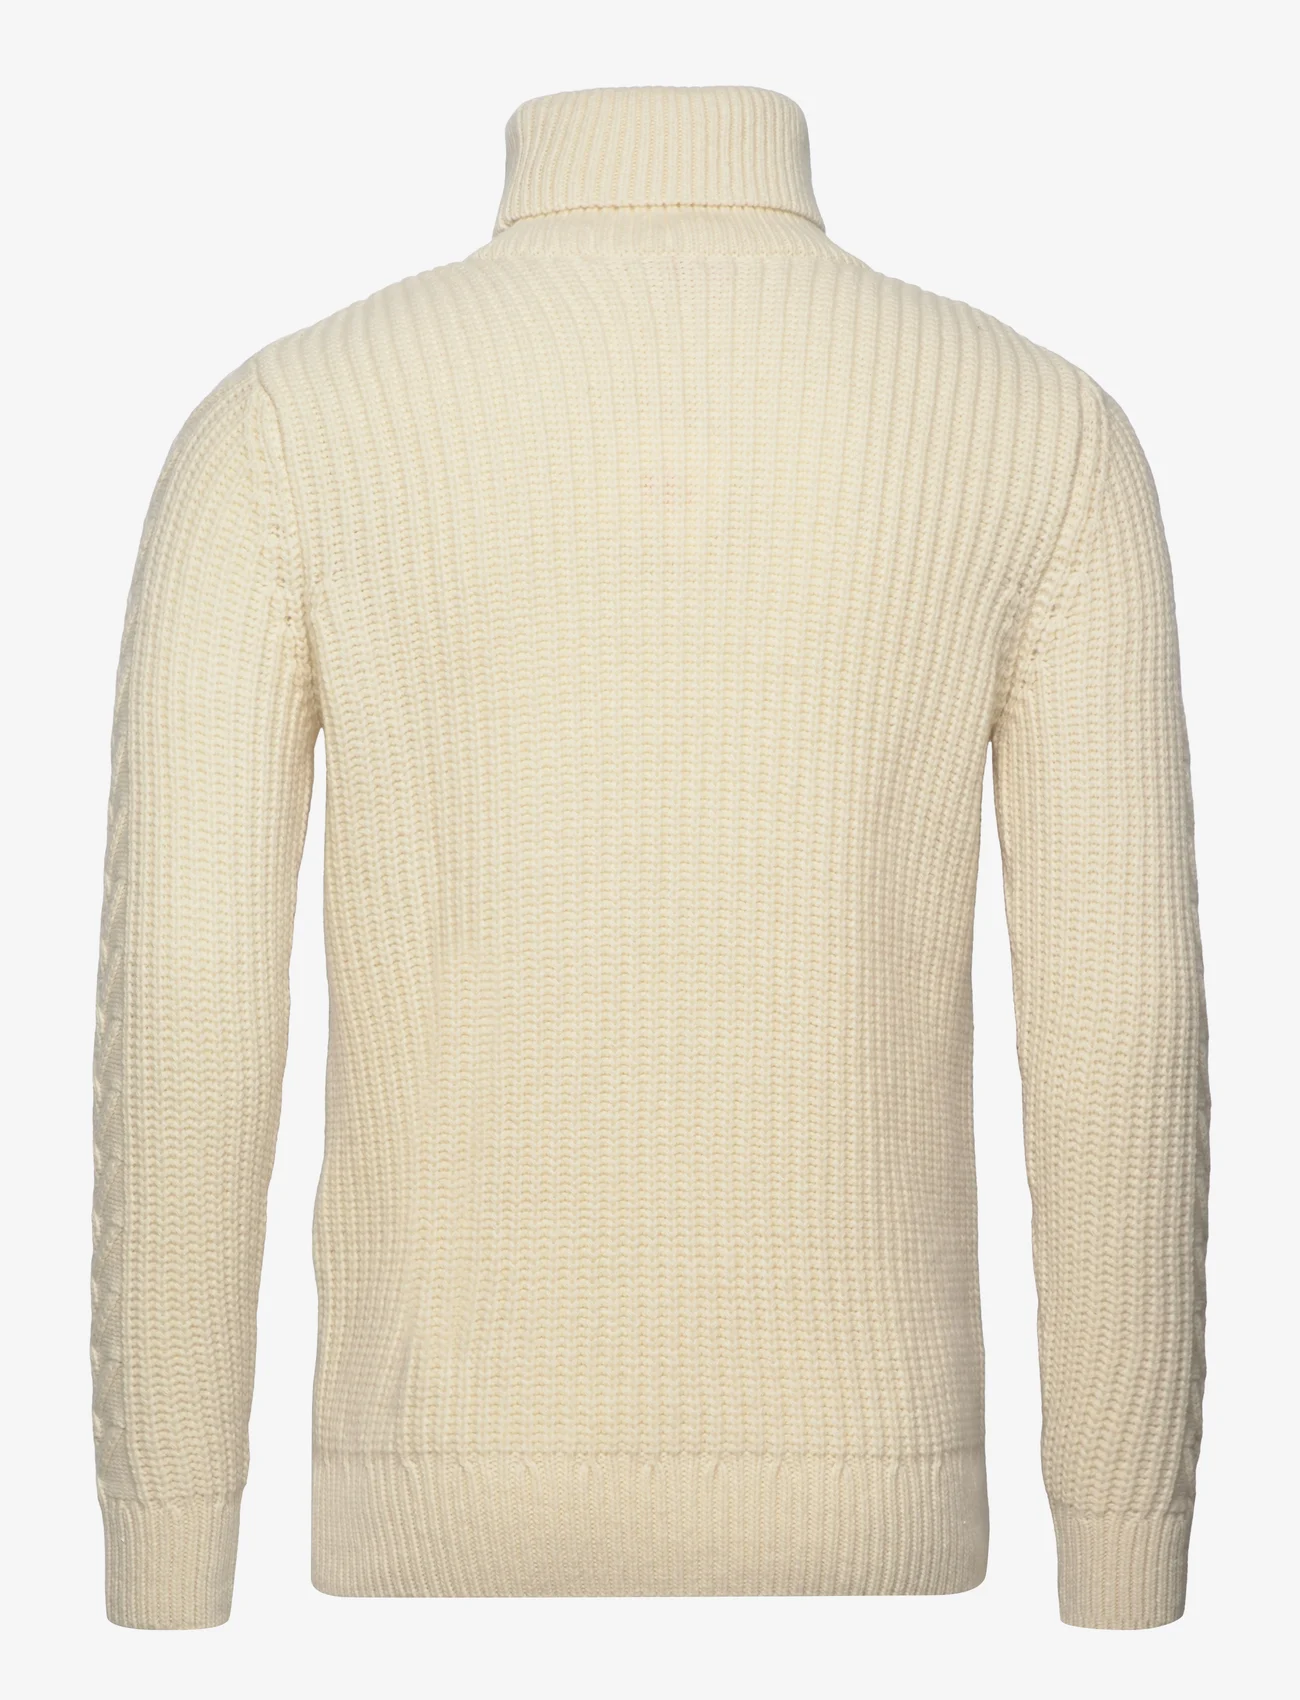 Armor Lux - Turtle neck Sweater Héritage - megztiniai su aukšta apykakle - misty grey - 1